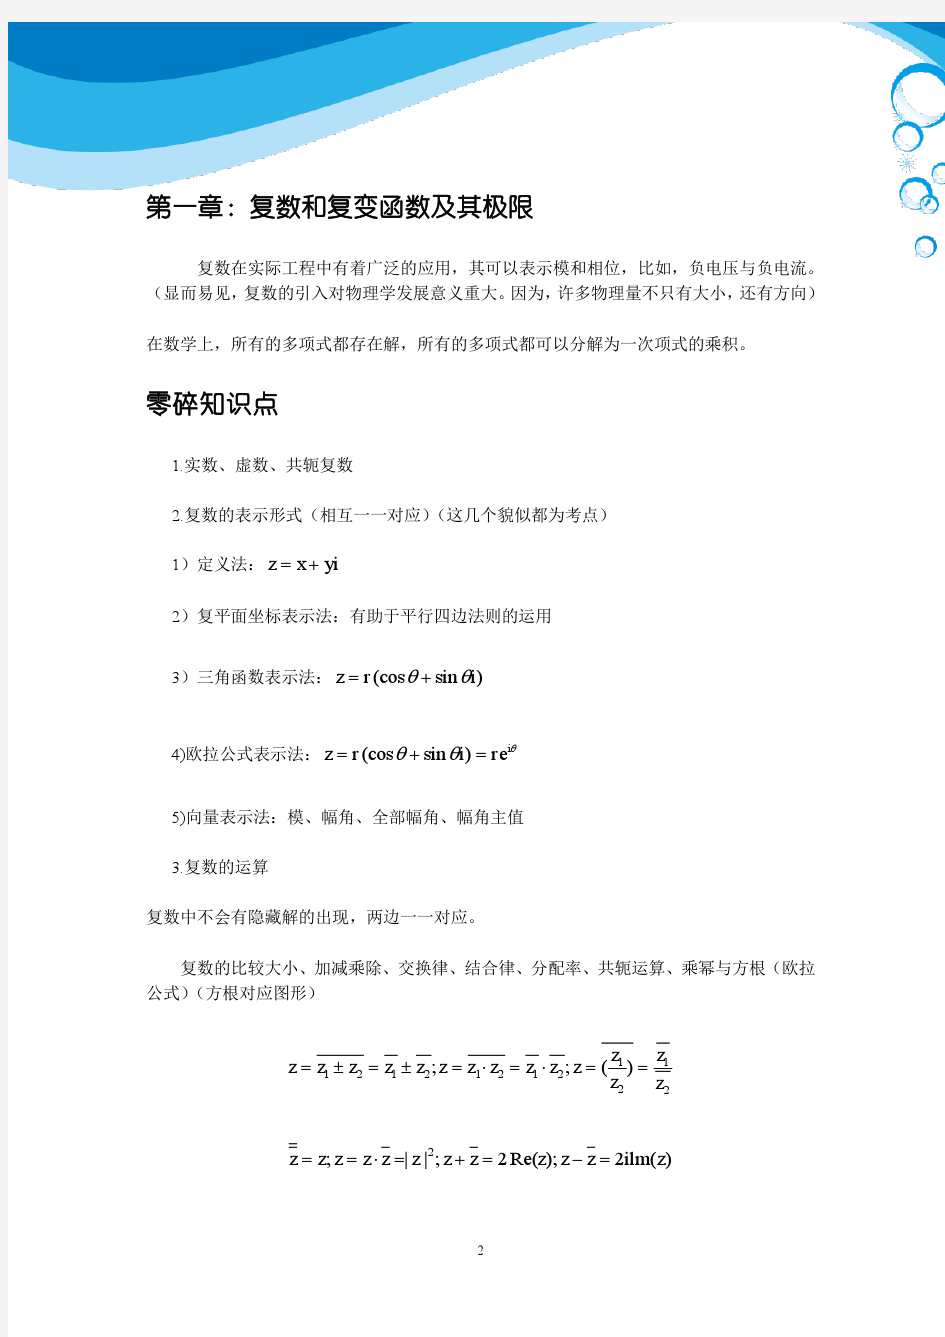 北京理工大学复变函数与积分变换总结